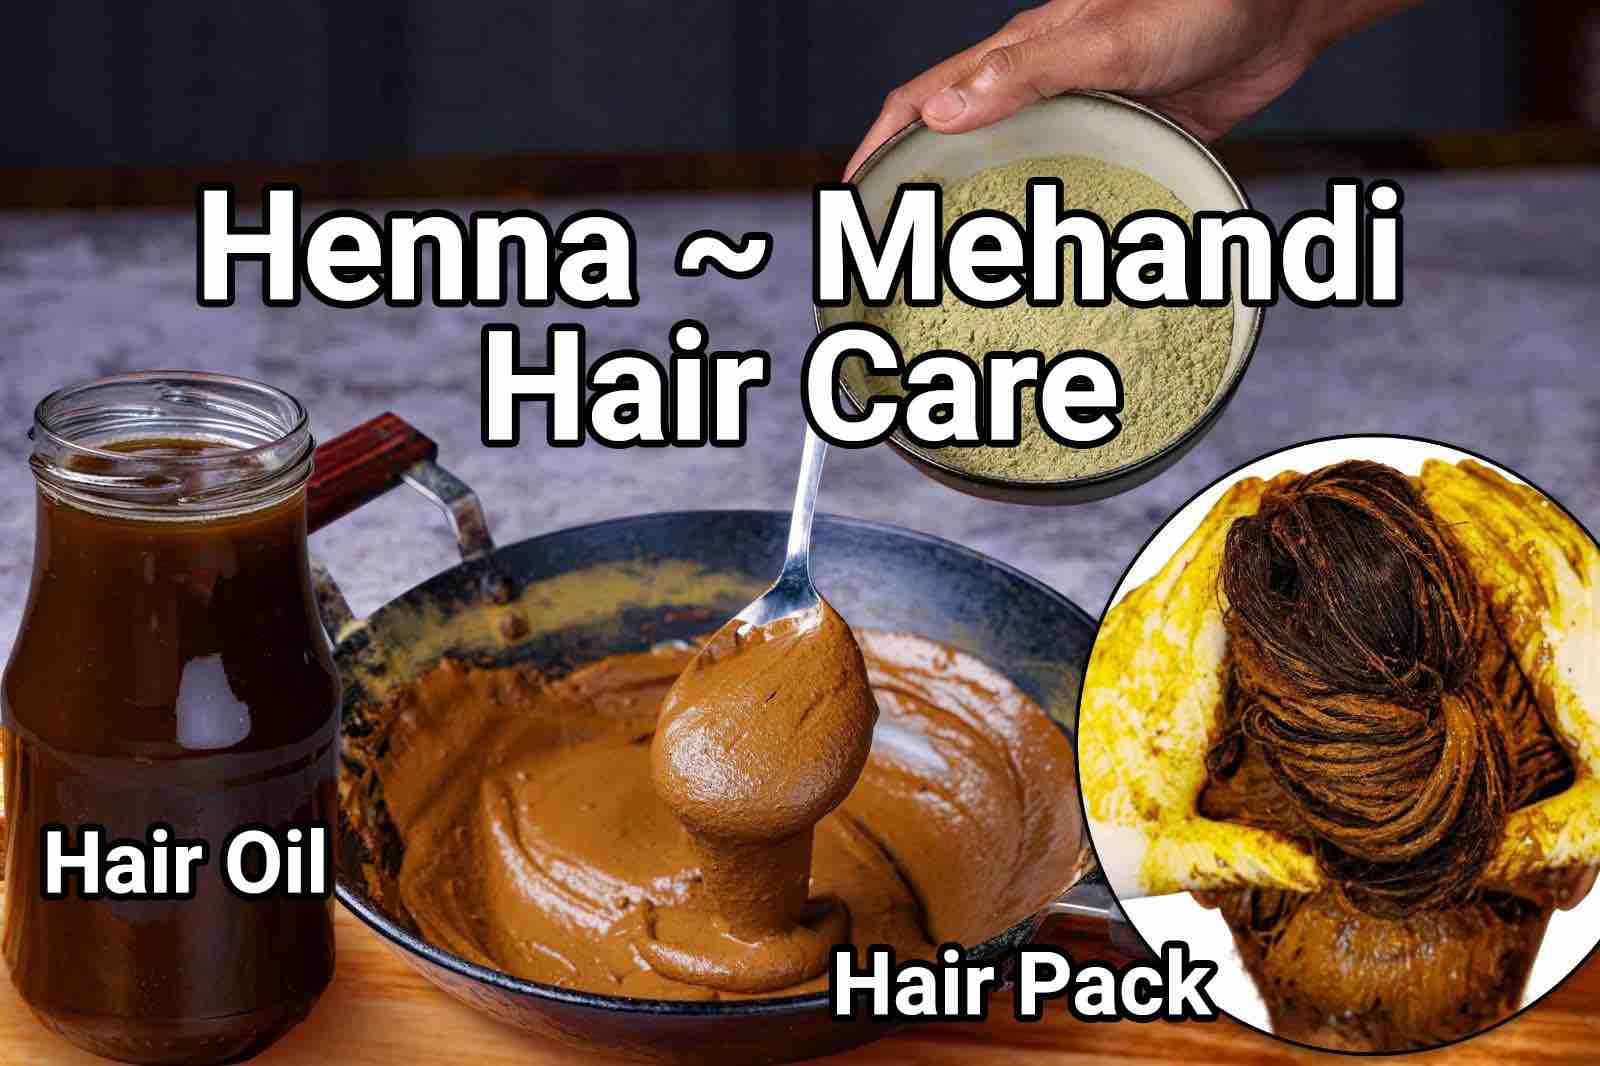 मेहंदी हेयर पैक रेसिपी | Mehandi Hair Pack in hindi | हिना हेयर ऑयल